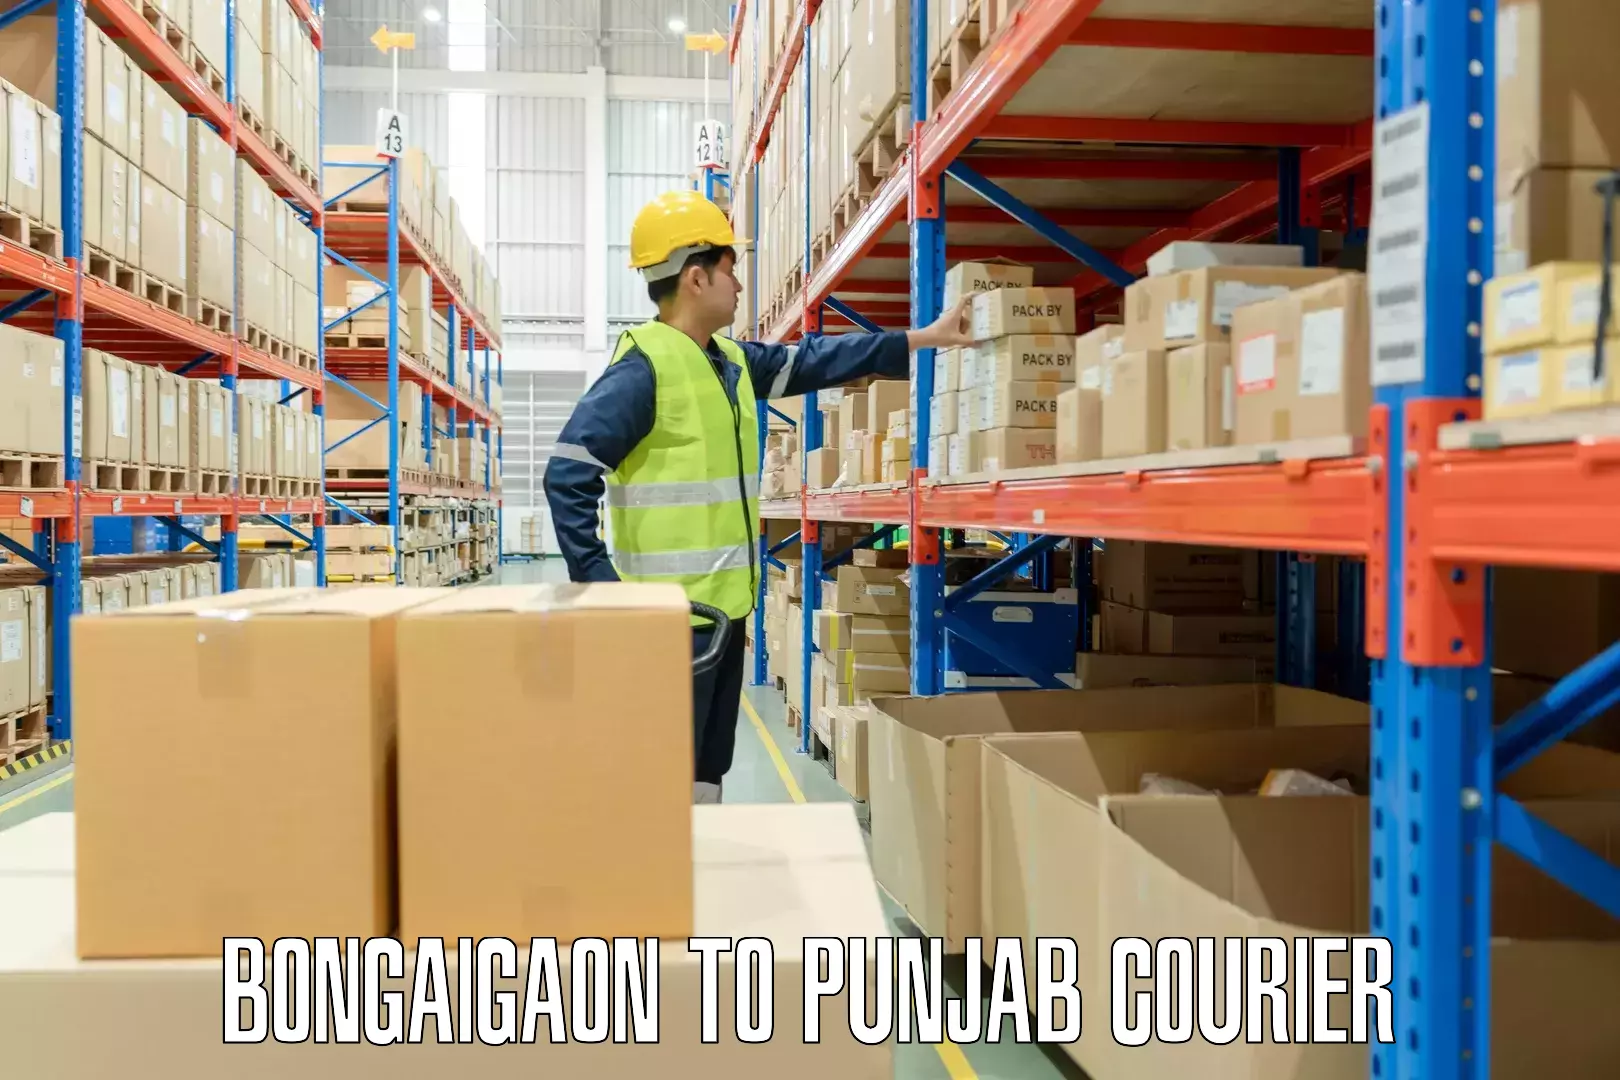 Urgent luggage shipment Bongaigaon to Punjab